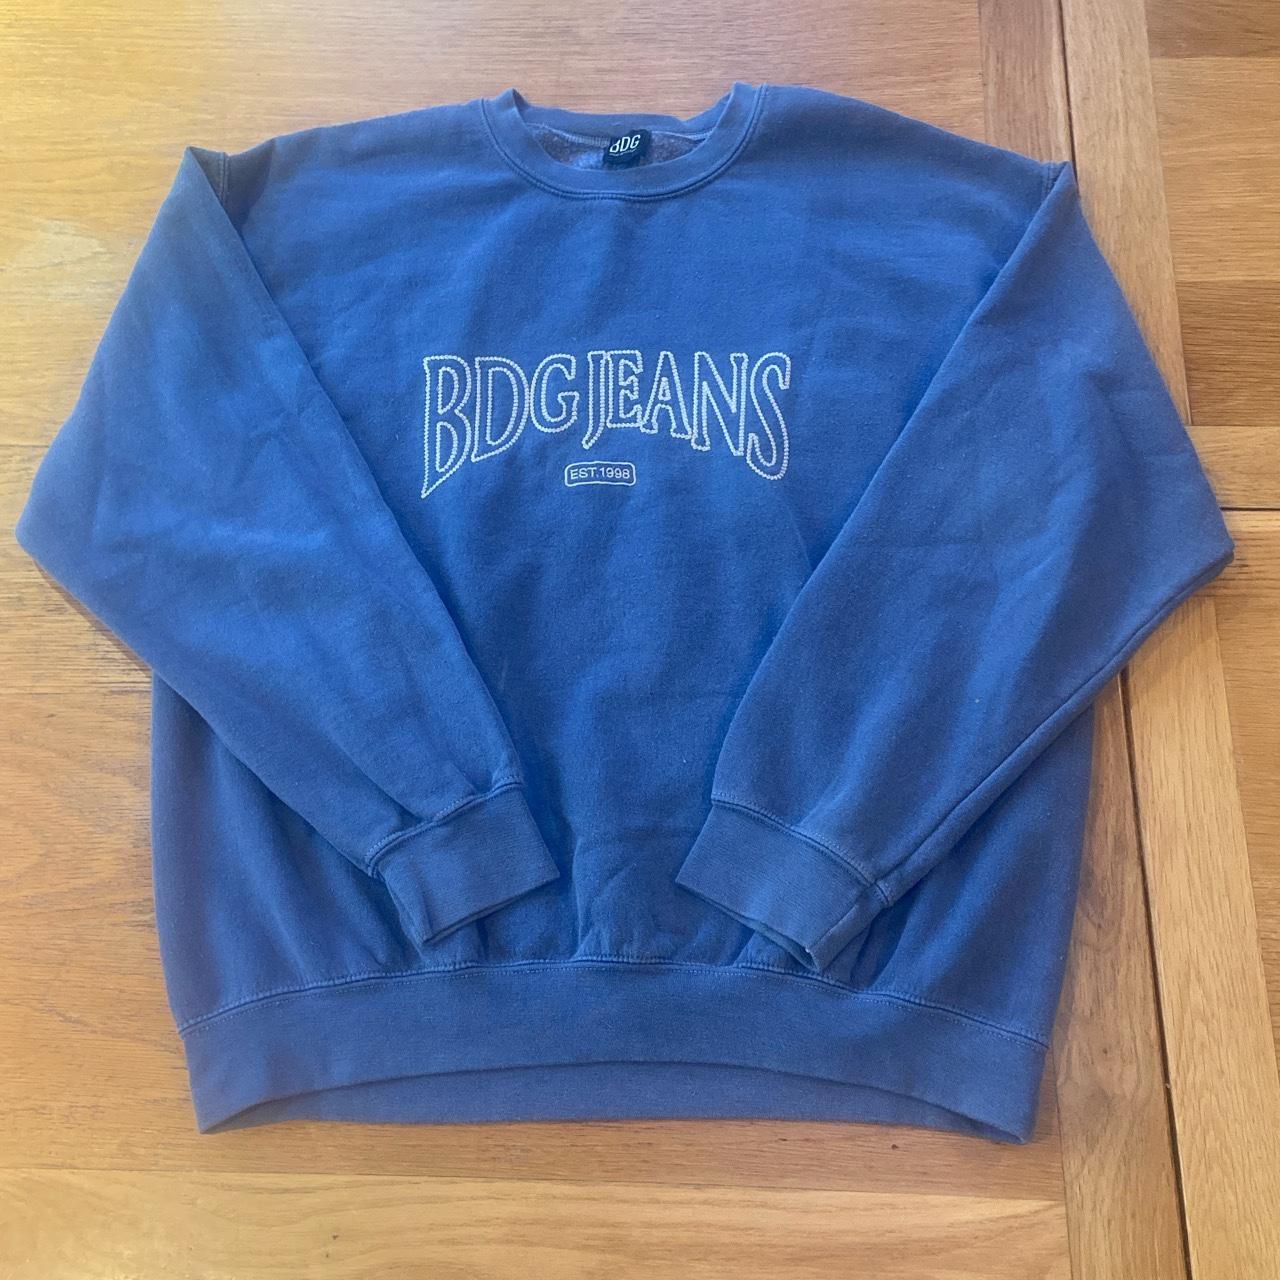 Vintage navy blue urban outfitters sweatshirt good... - Depop